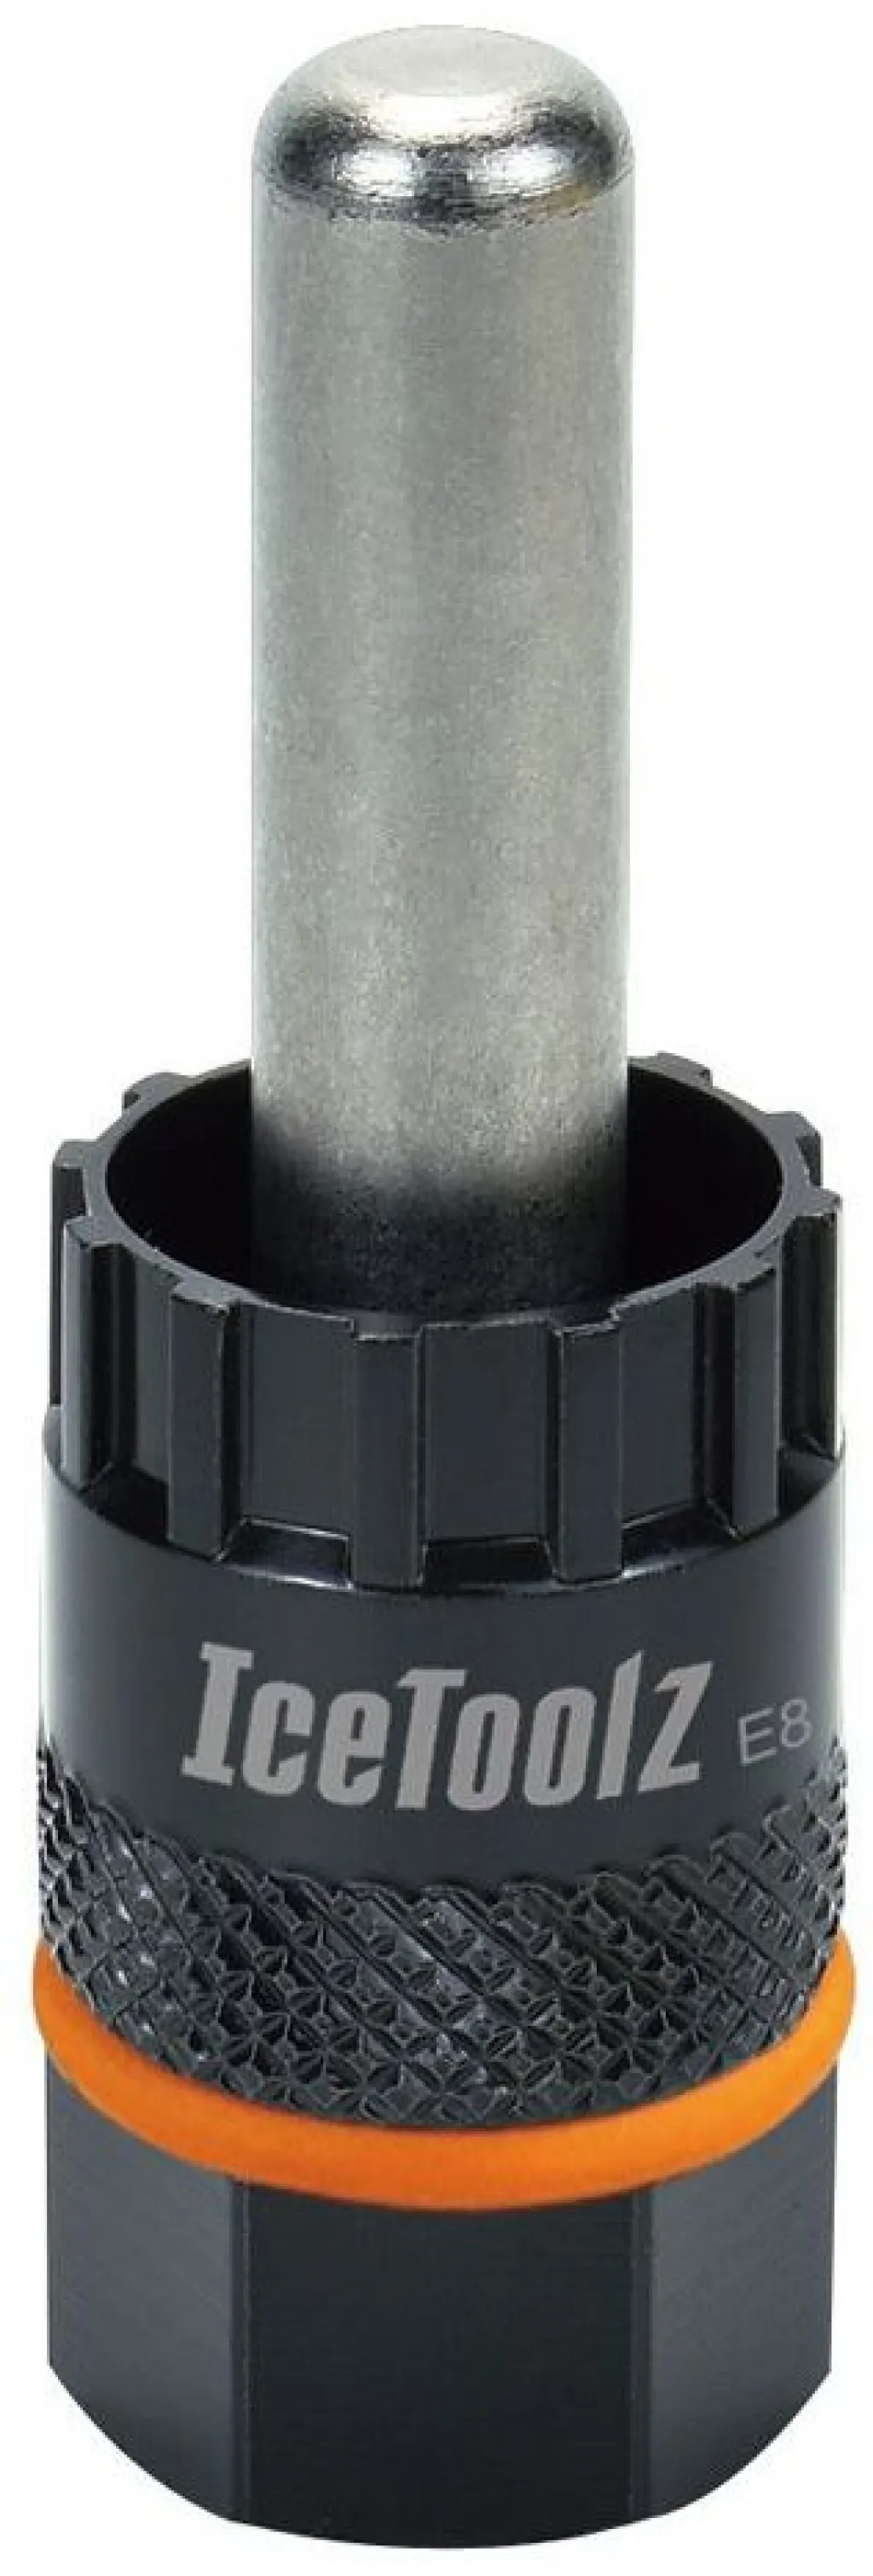 Ключ ICE TOOLZ 09C2 съём. д/касс Shimano/Center Lock дискового тормоза с 12 мм направляющим штырем, Cr-V сталь